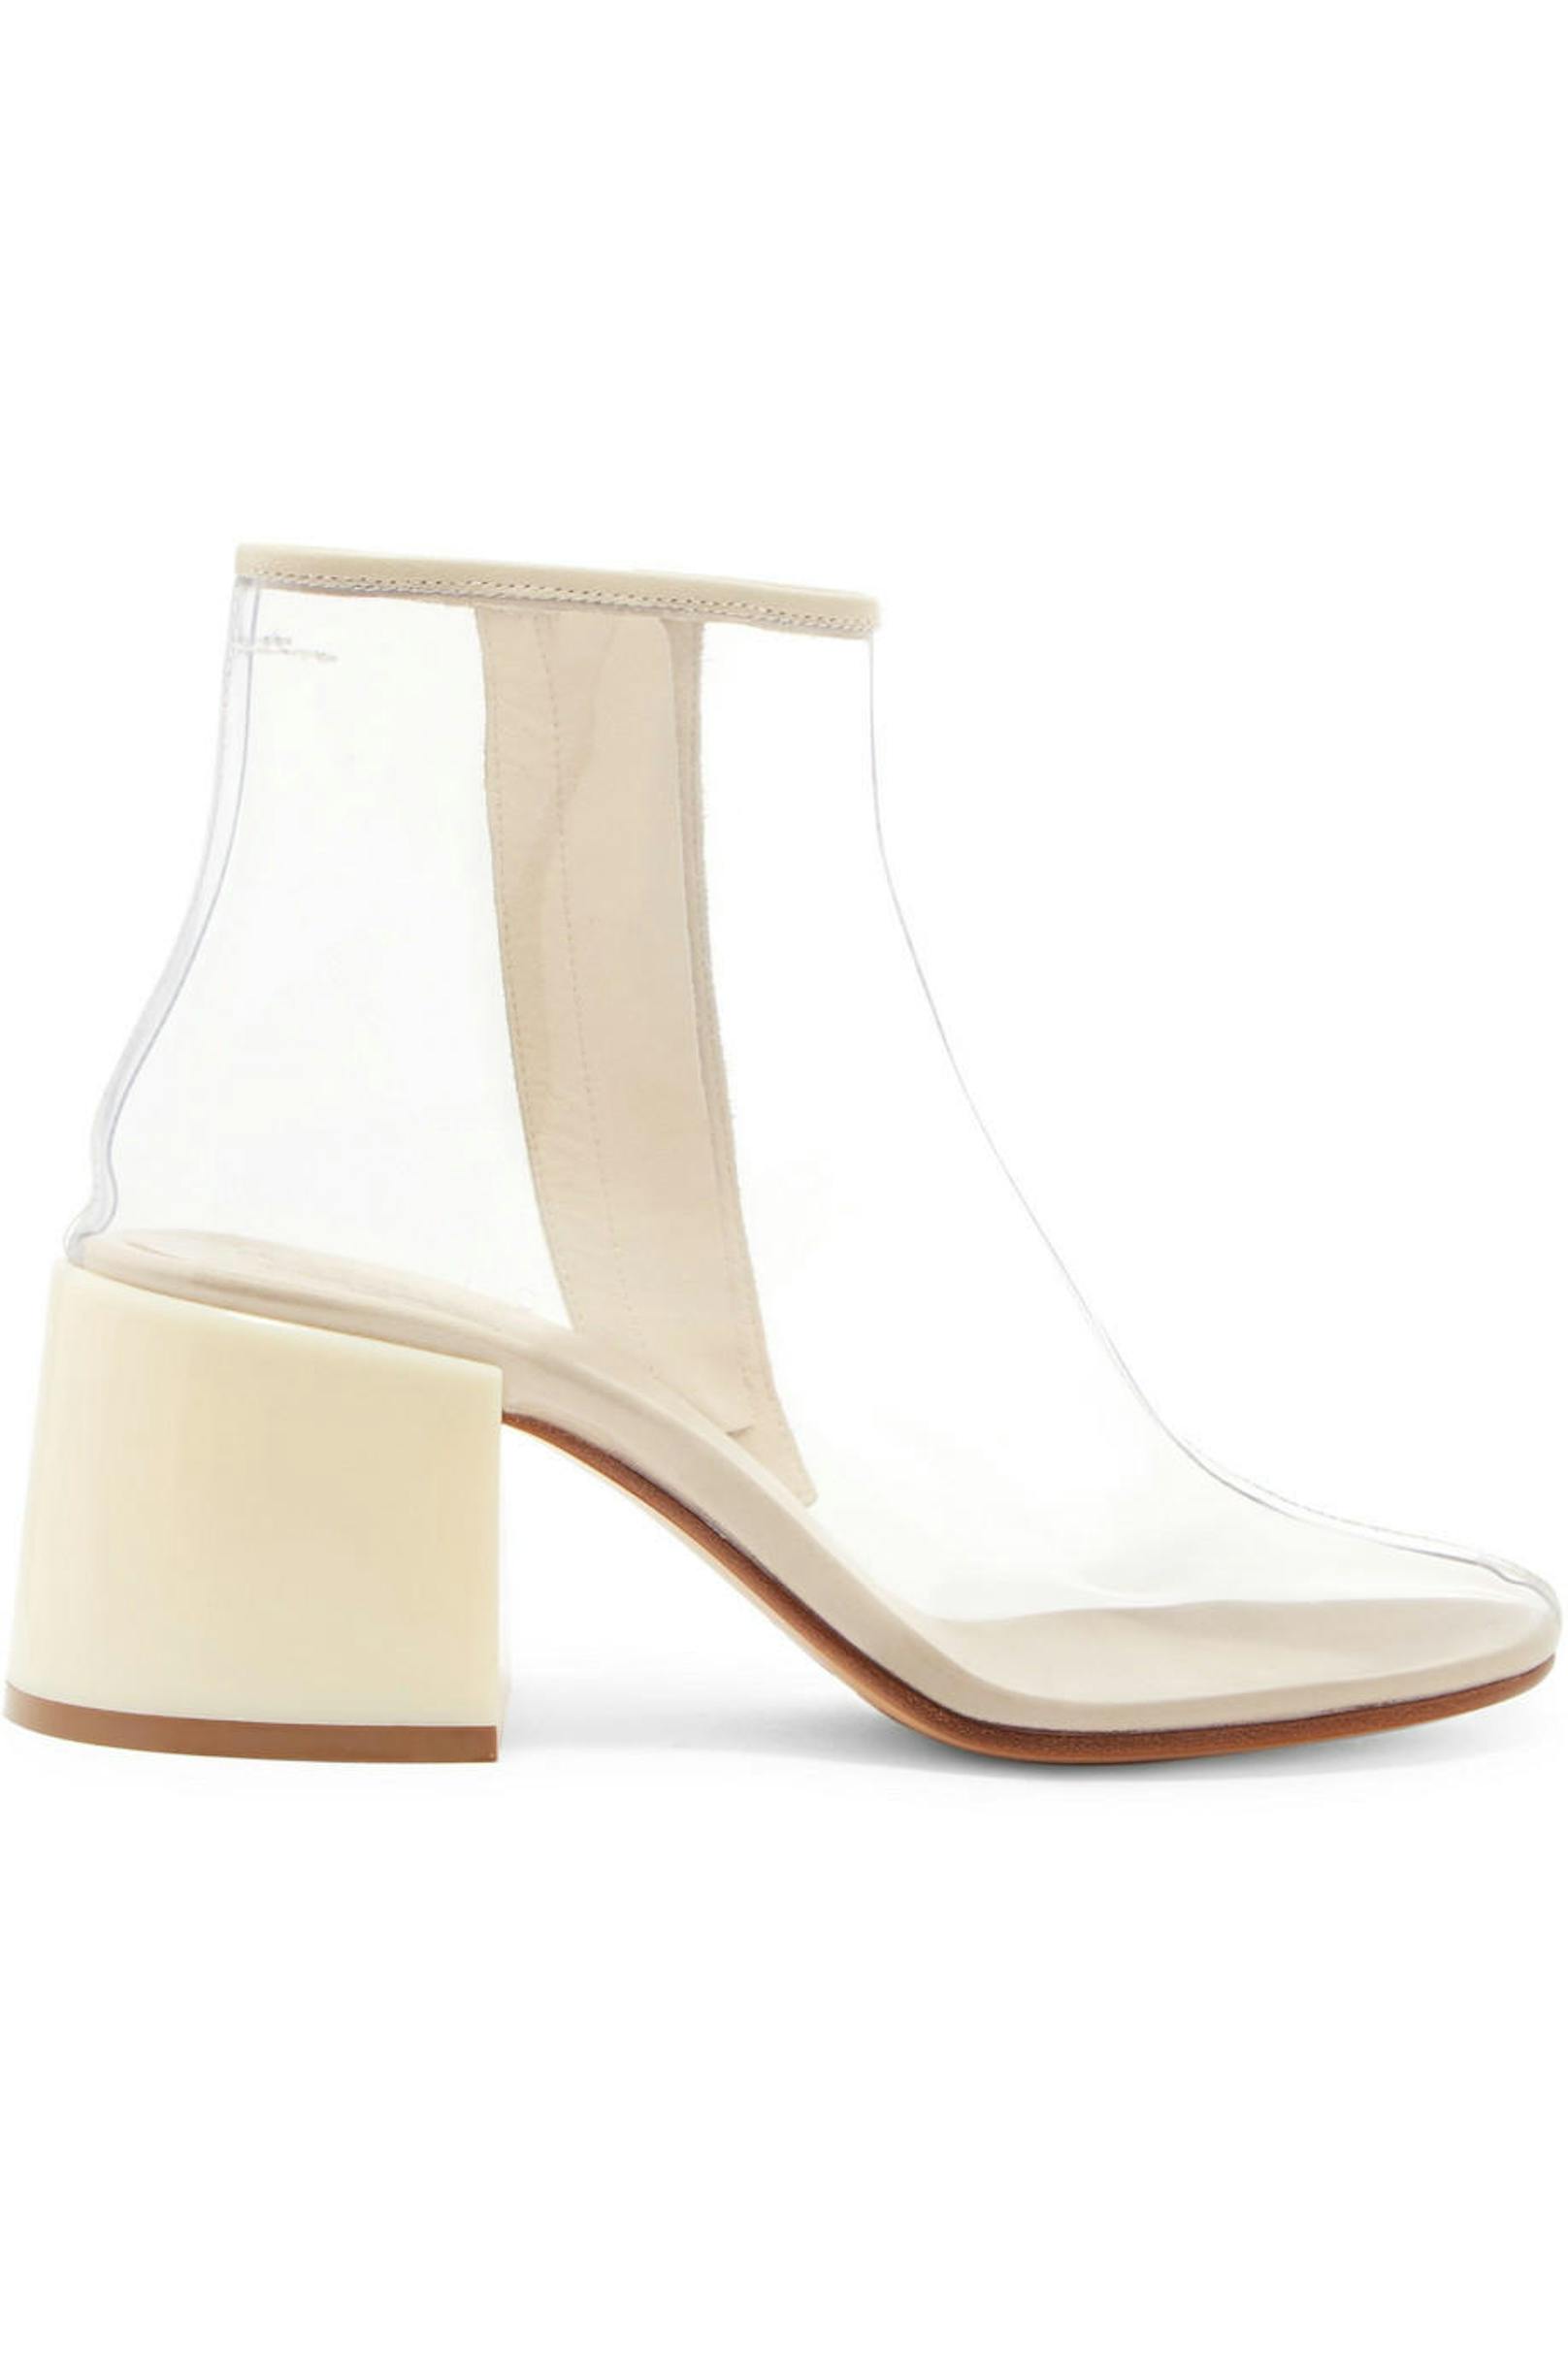 Die perfekten Schuhe für Regentage gibt es auch von MM6 Maison Margiela um 490 Euro, zu finden auf <a href="https://www.net-a-porter.com/at/de/product/1041721/MM6_Maison_Margiela/ankle-boots-aus-pvc-mit-lederbesatz">www.net-a-porter.com</a>